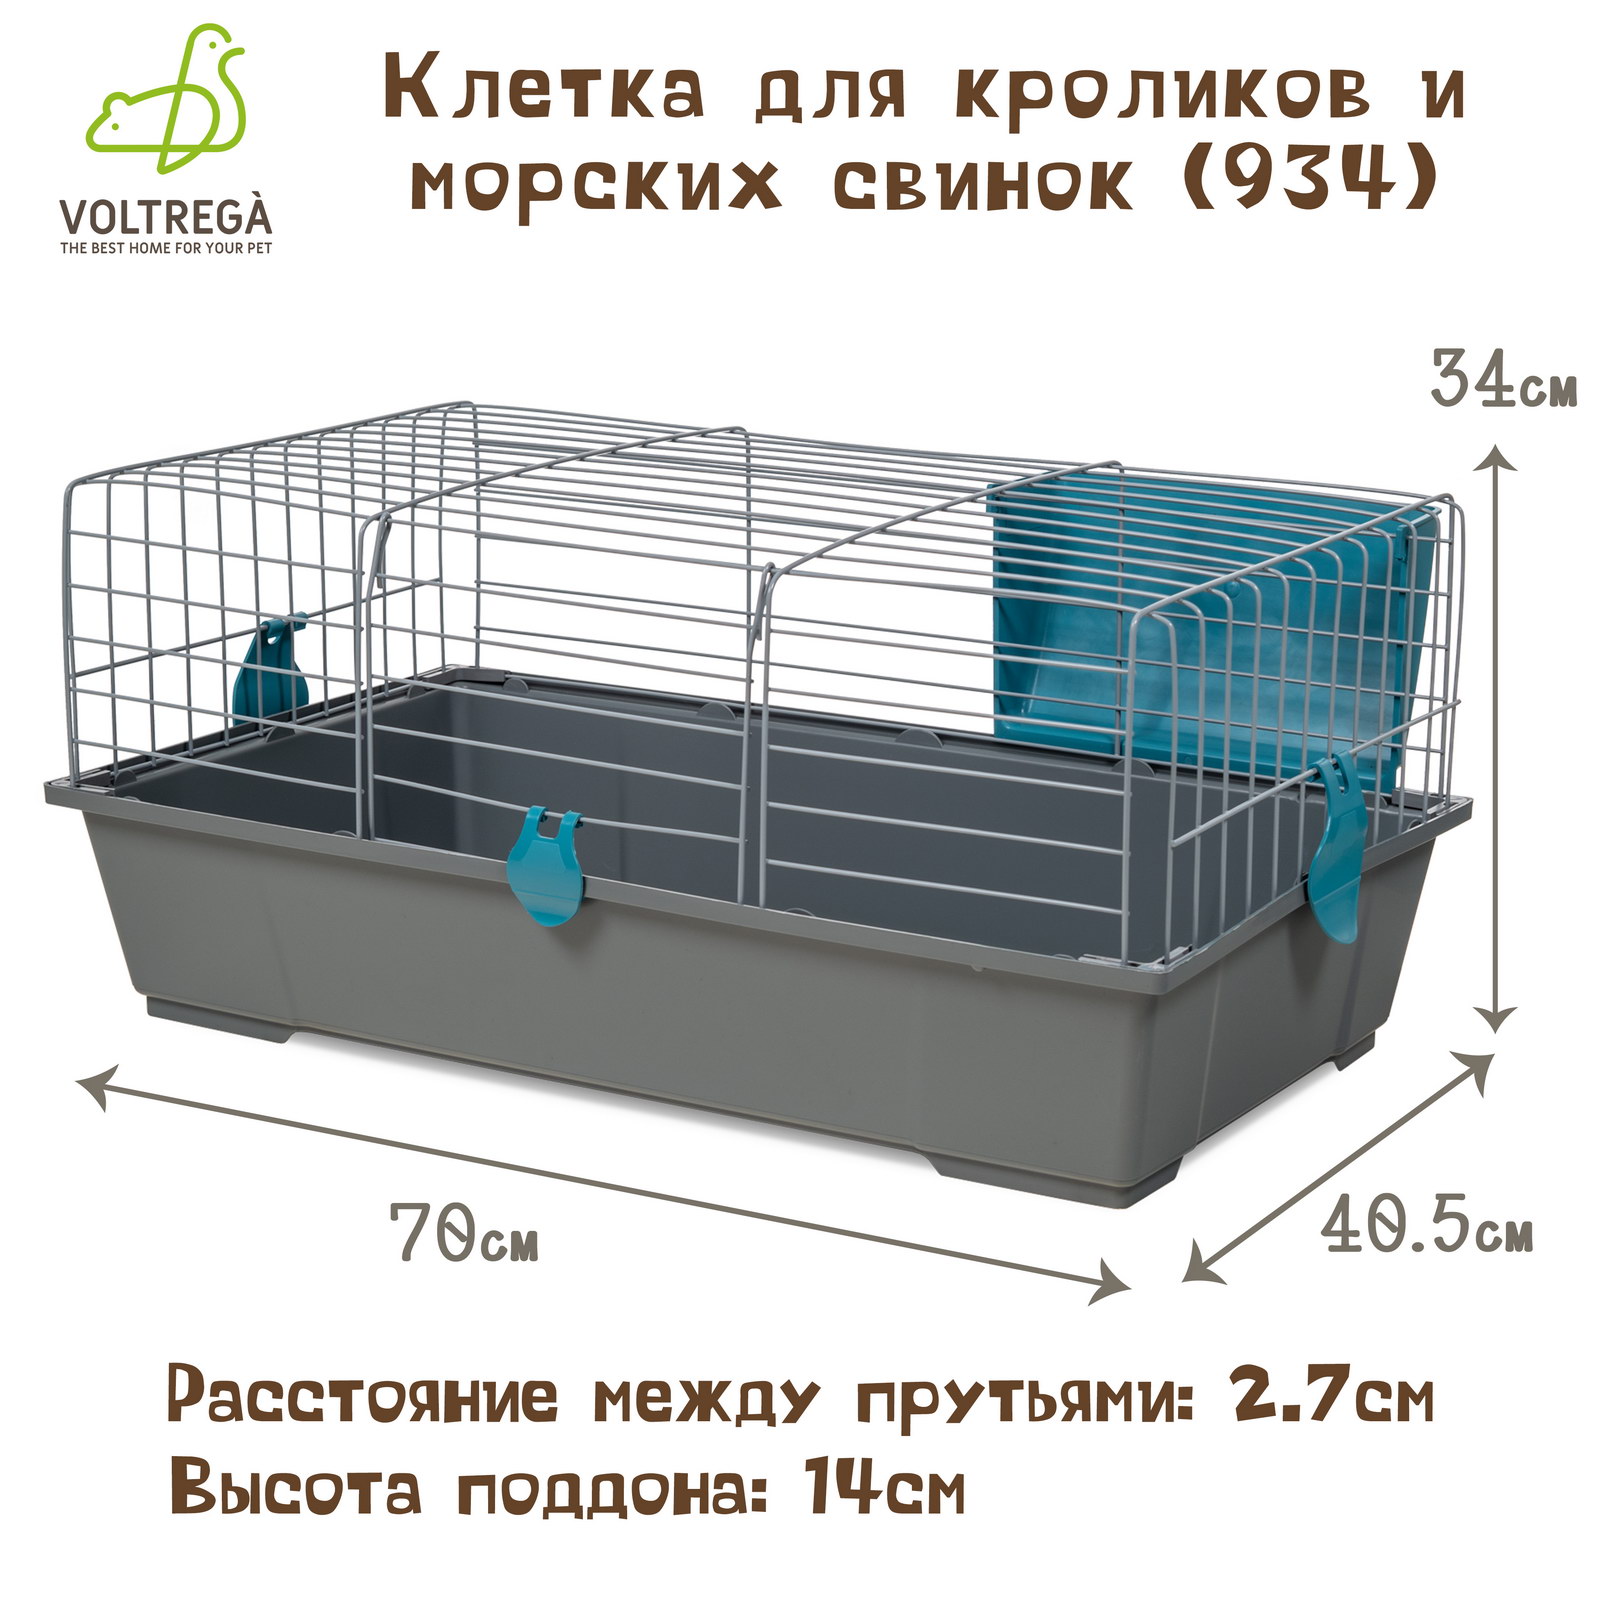 Клетка для кроликов и морских свинок VOLTREGA 934, серо-голубой, 70 x 40.5 x 34 см